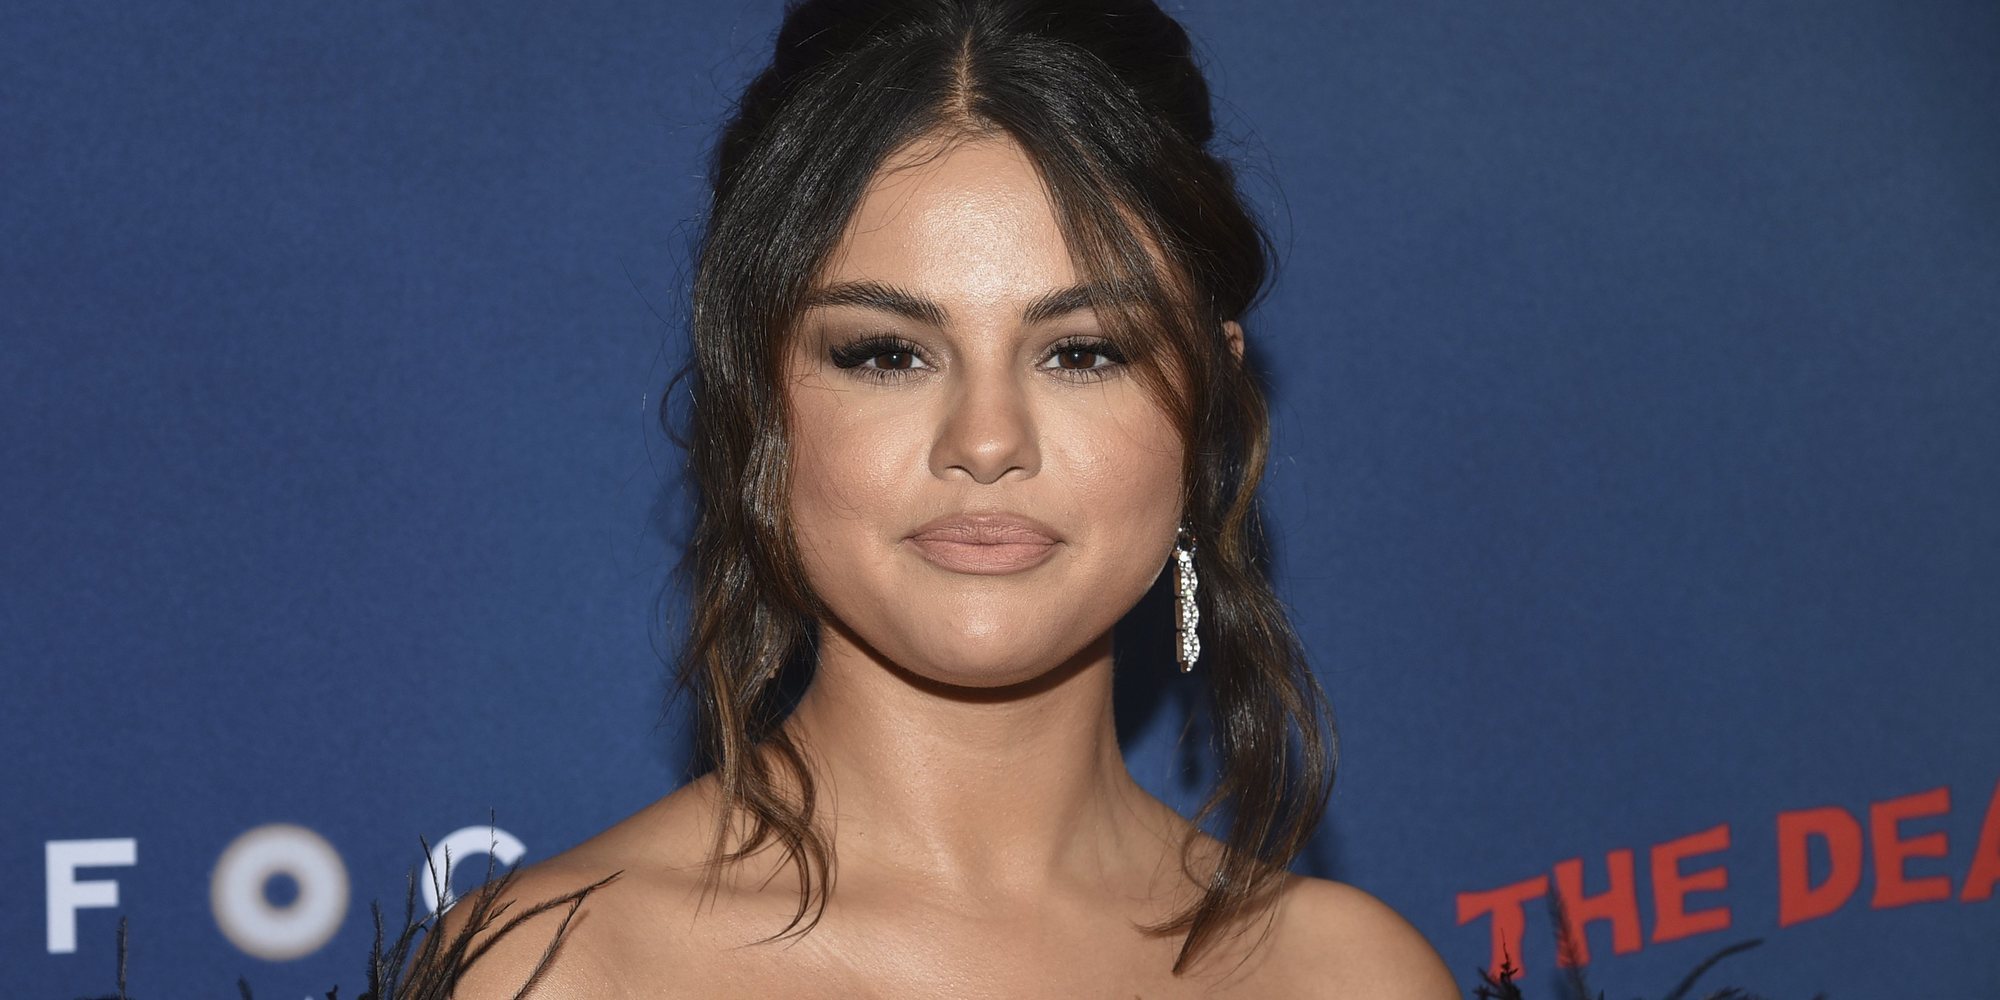 Selena Gomez confiesa que es bipolar: "Cuanto más información tengo, más me ayuda"